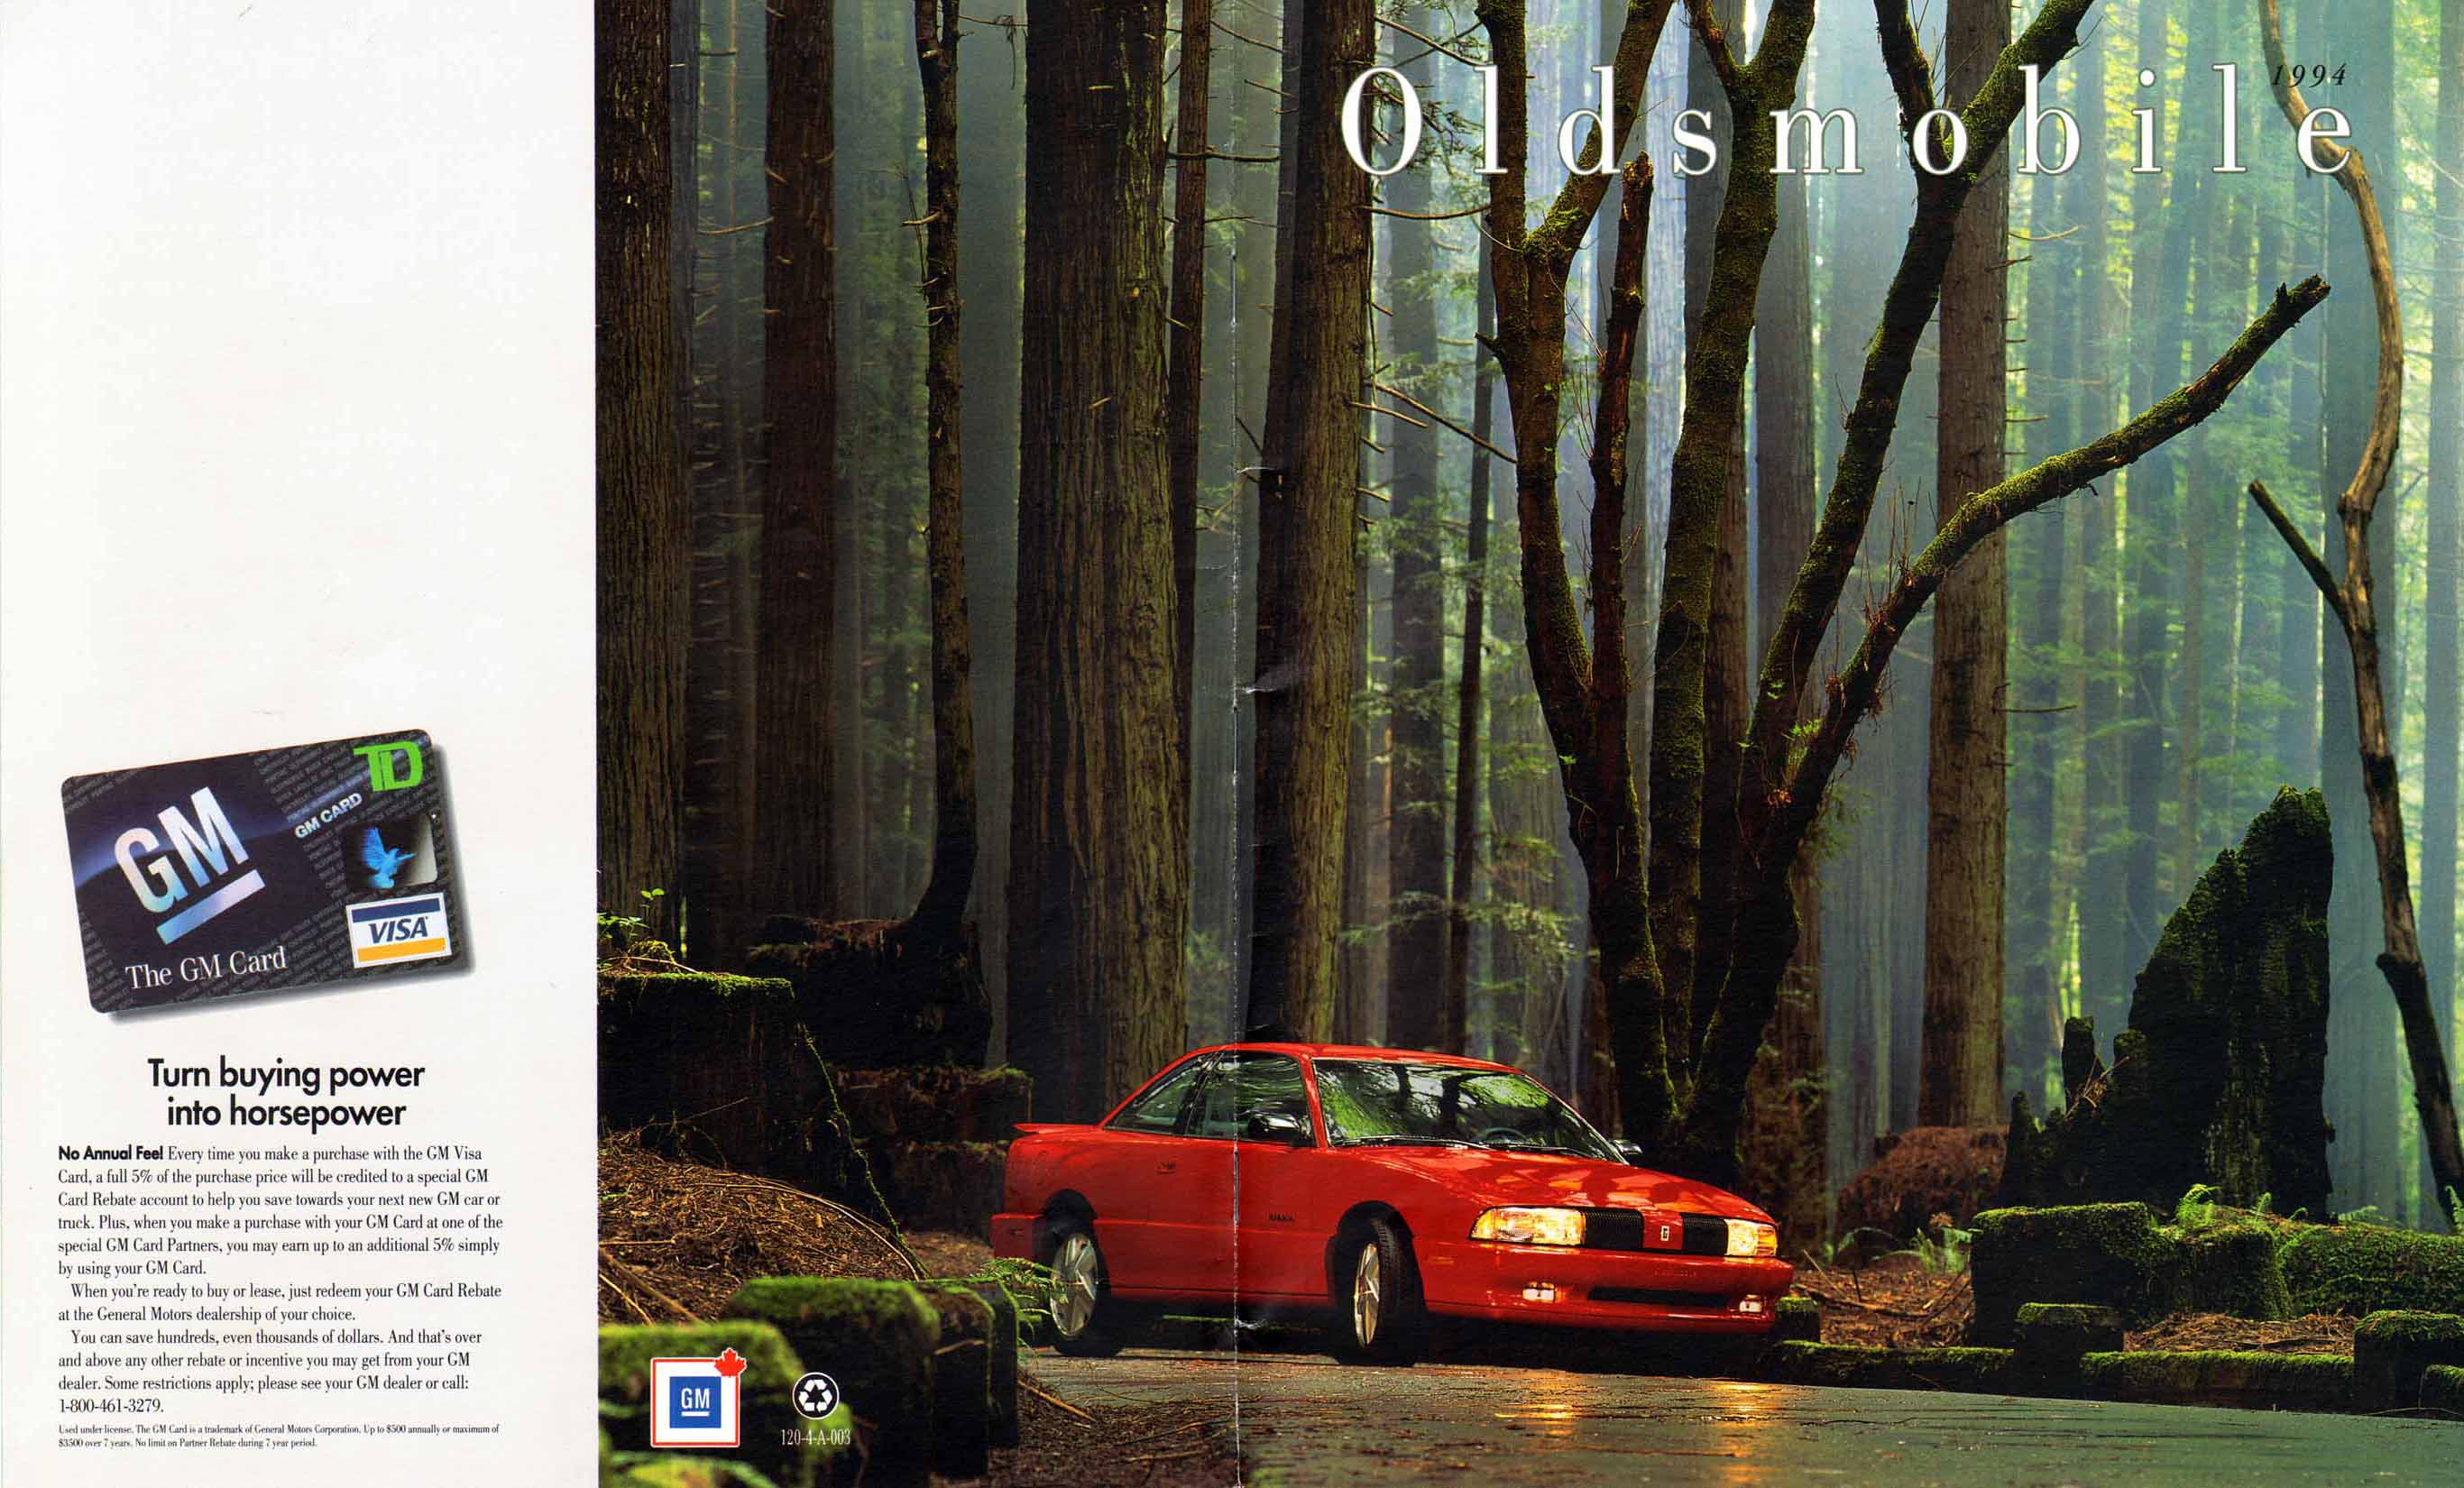 1994_Oldsmobile_Full_Line_Cdn-56-01